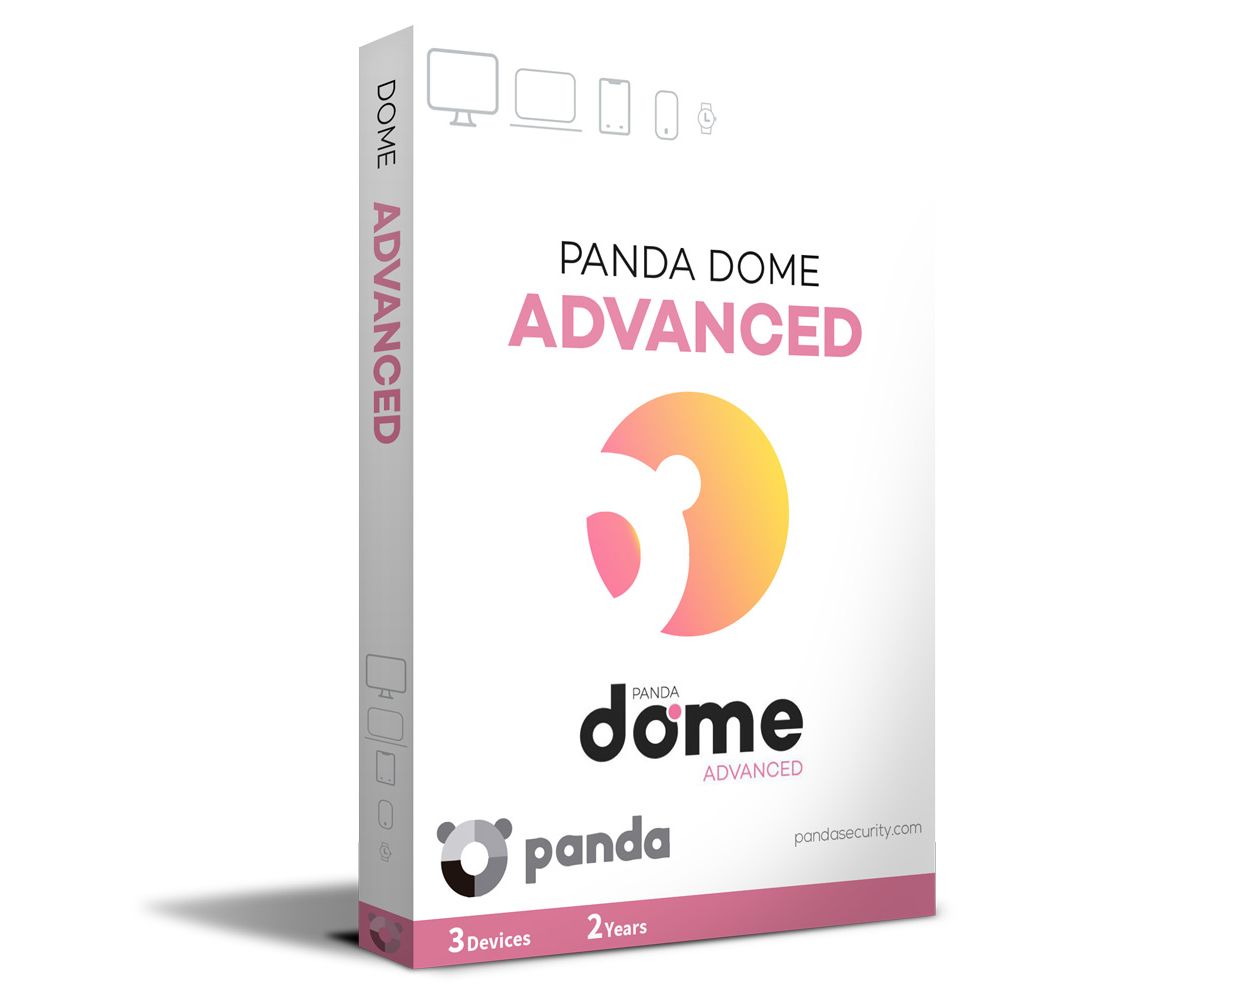 panda dome serial key 2021